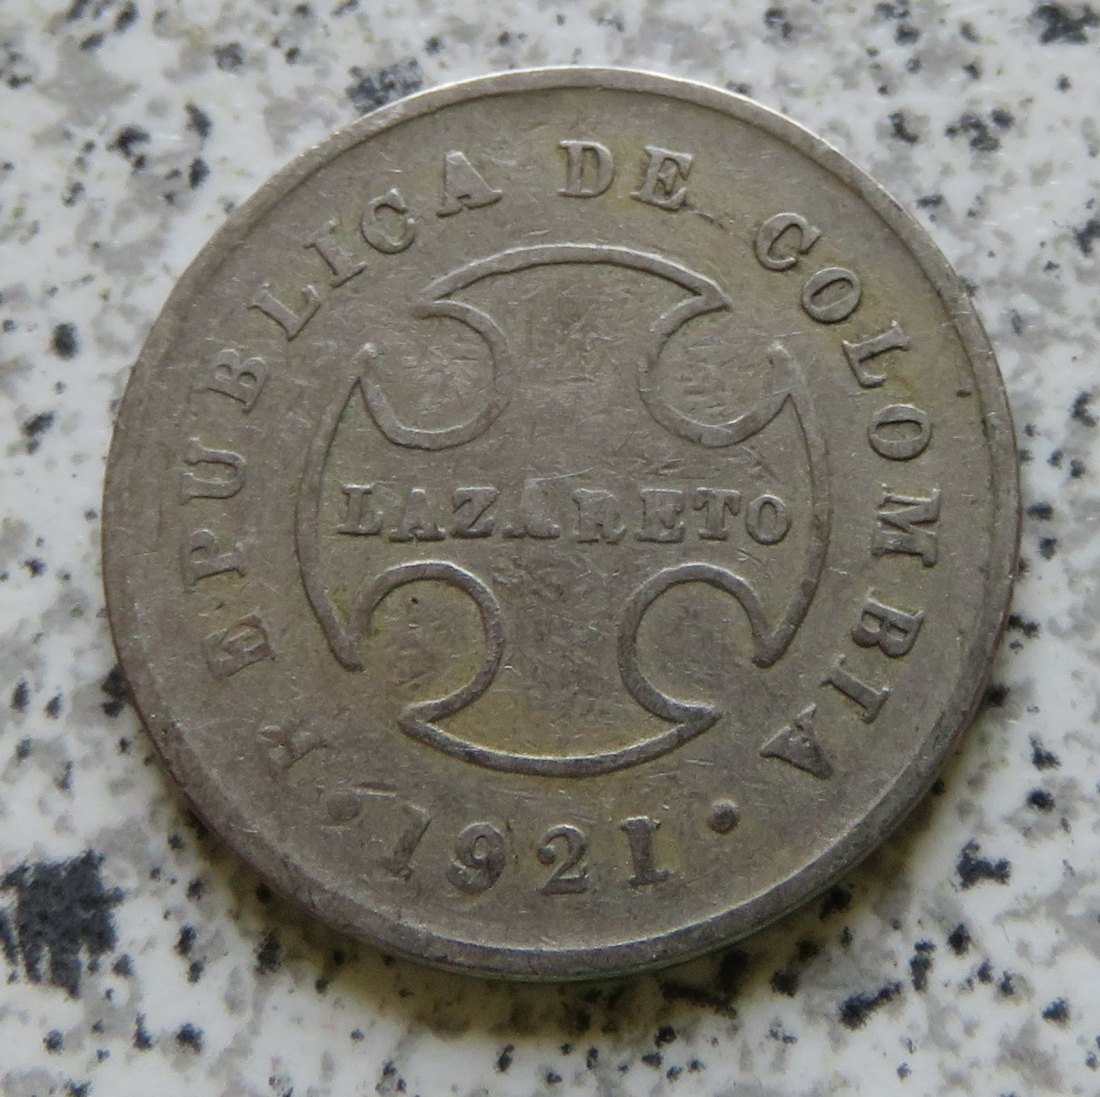  Kolumbien Lazarettmünze 10 Centavos 1921, selten   